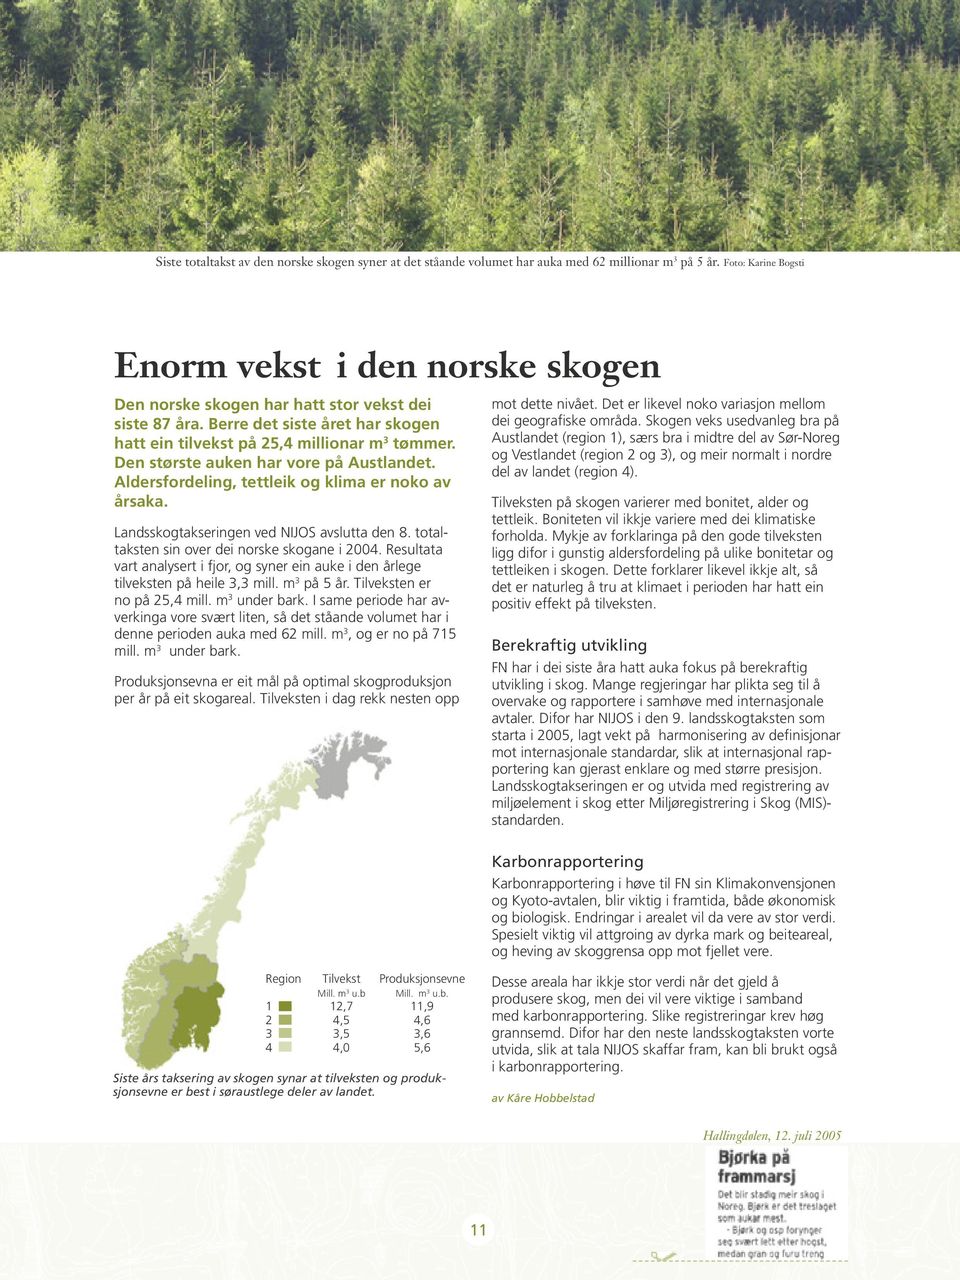 Den største auken har vore på Austlandet. Aldersfordeling, tettleik og klima er noko av årsaka. Landsskogtakseringen ved NIJOS avslutta den 8. totaltaksten sin over dei norske skogane i 2004.